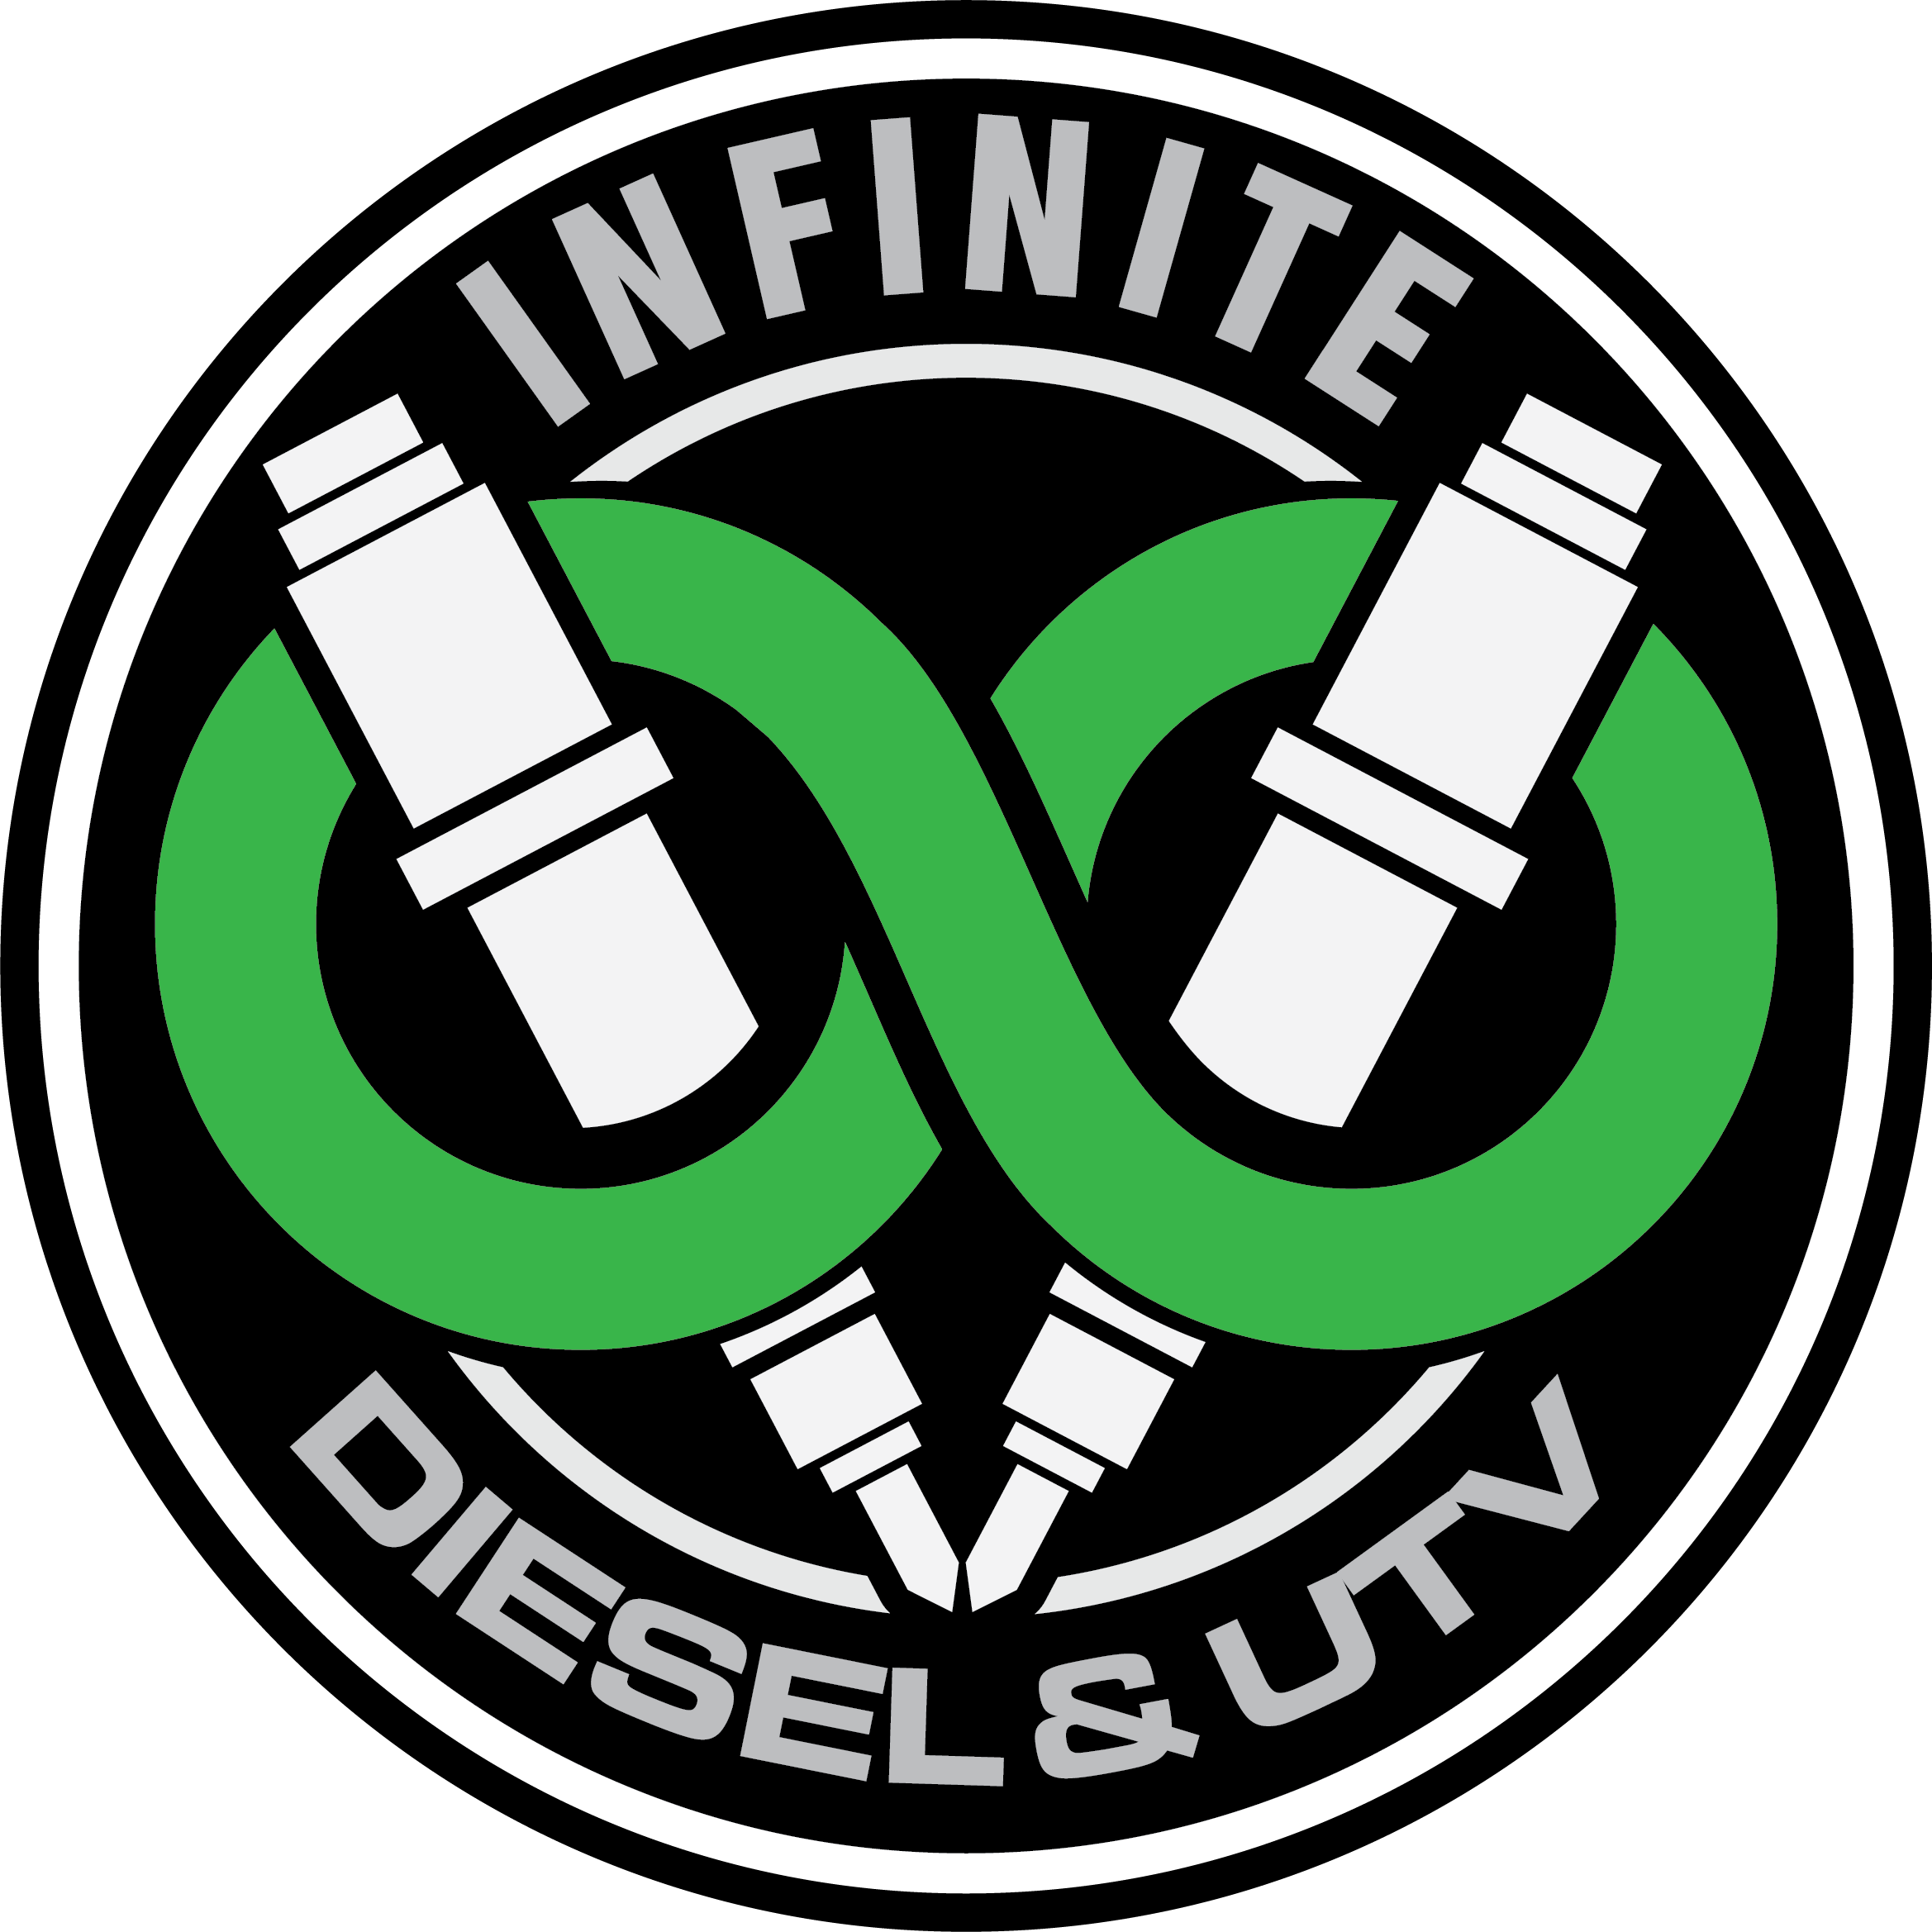 Infinite Diesel AND utv ROUND